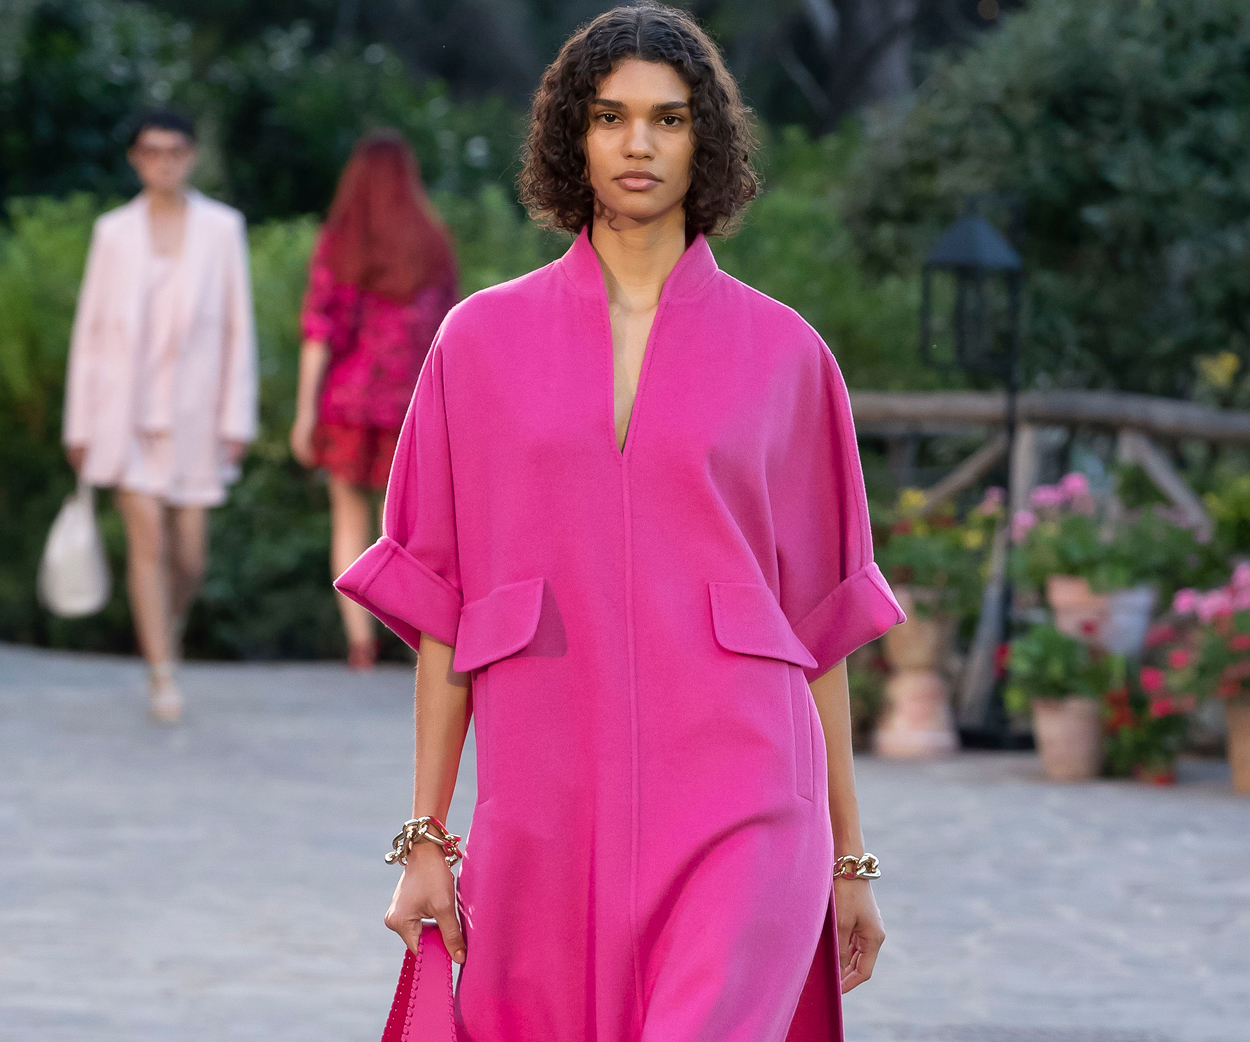 Louis Vuitton Maxi Multi Pochette Accessoires Fuchsia Pink in